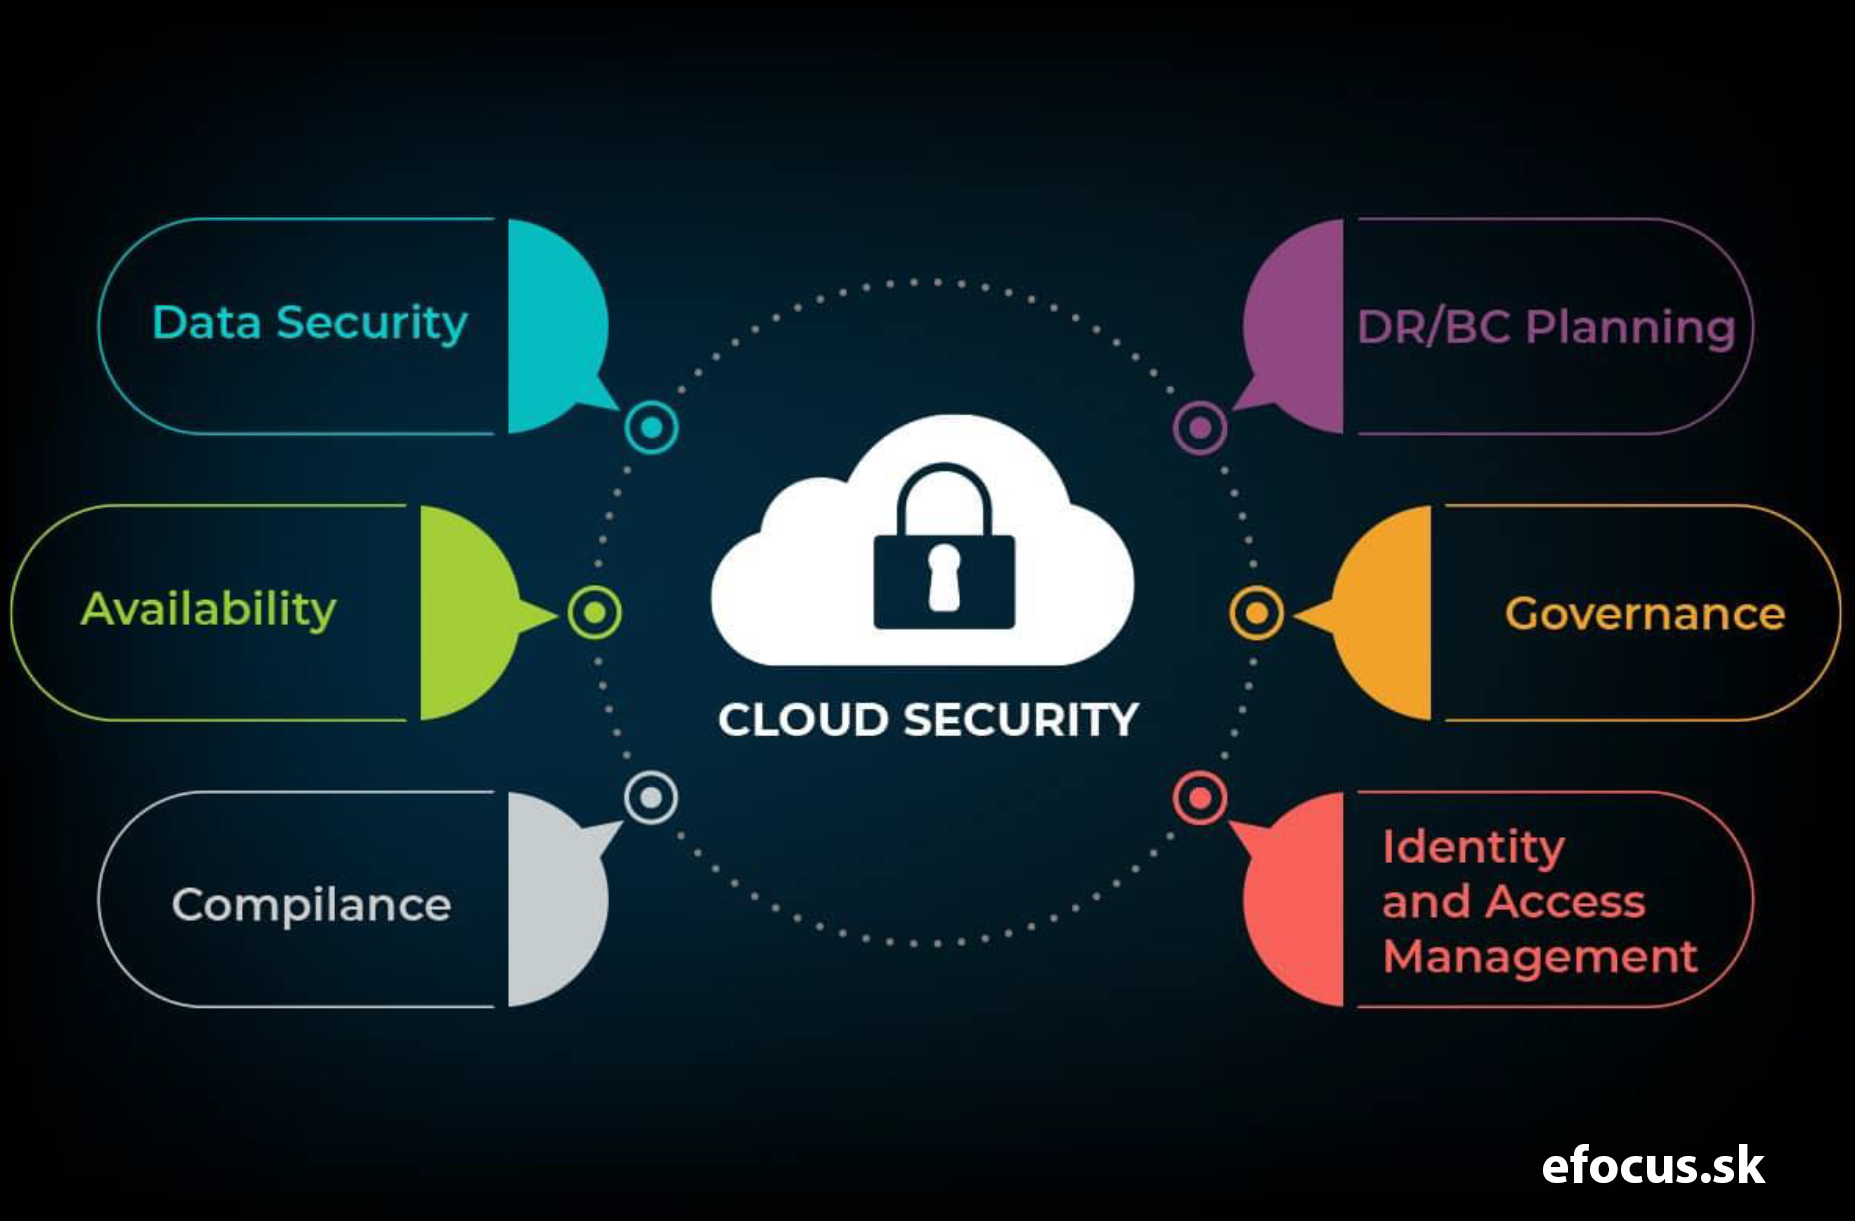 Virtuálna konferencia „Kybernetická bezpečnosť a cloudové služby“ 